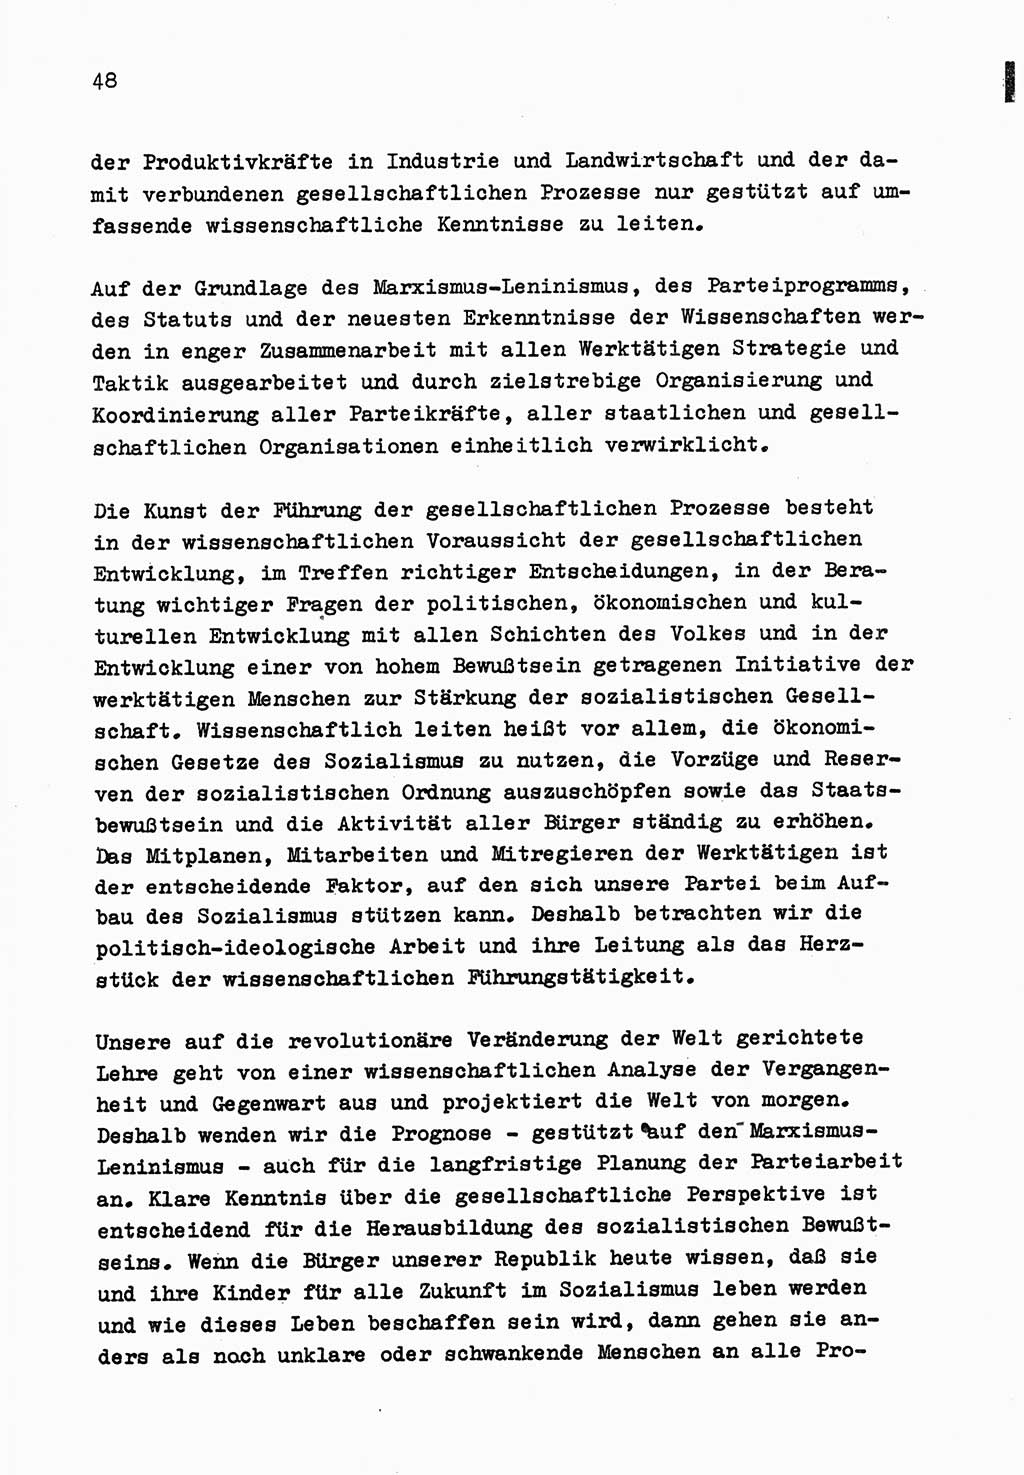 Zu Fragen der Parteiarbeit [Sozialistische Einheitspartei Deutschlands (SED) Deutsche Demokratische Republik (DDR)] 1979, Seite 48 (Fr. PA SED DDR 1979, S. 48)